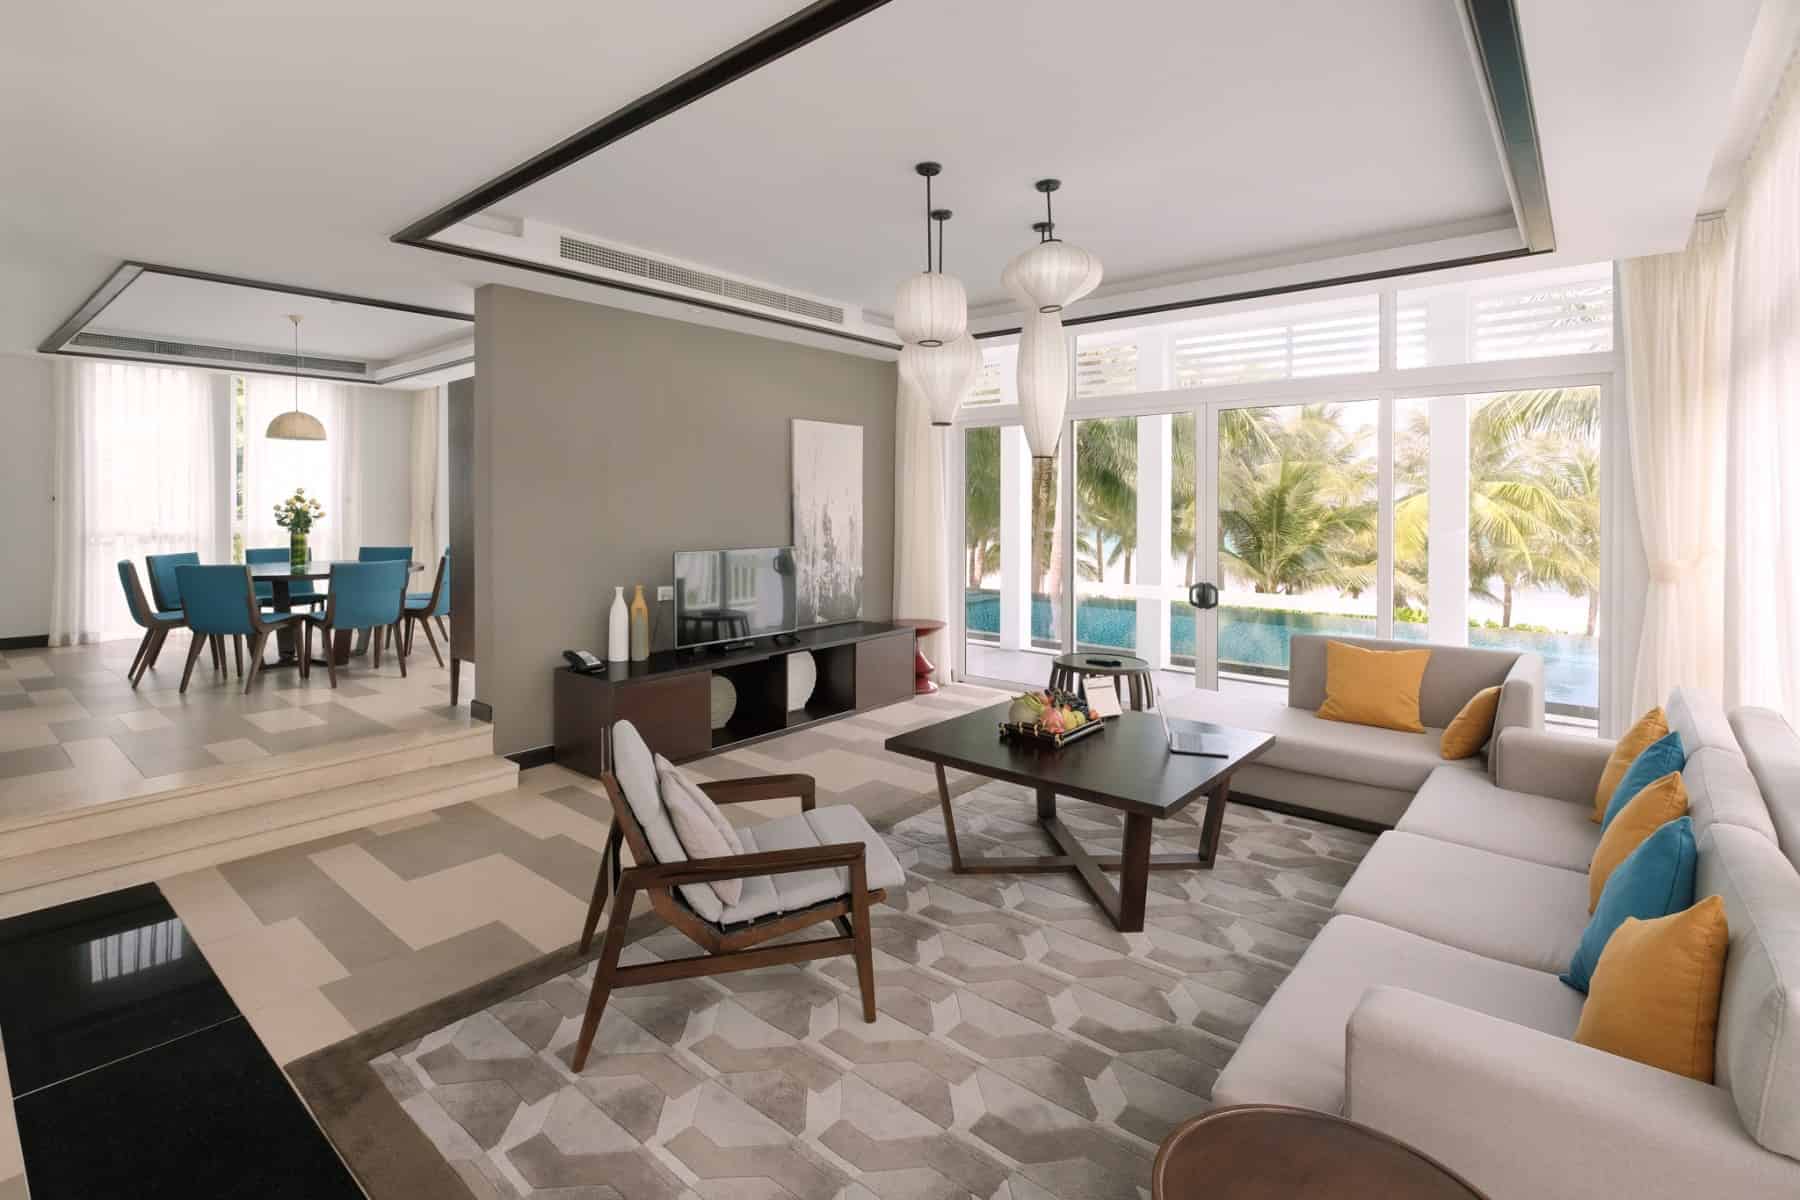 Thiết kế phòng khách sang trọng, ưu tiên những khoảng mở để tối ưu ánh sáng tự nhiên và tầm nhìn đẹp